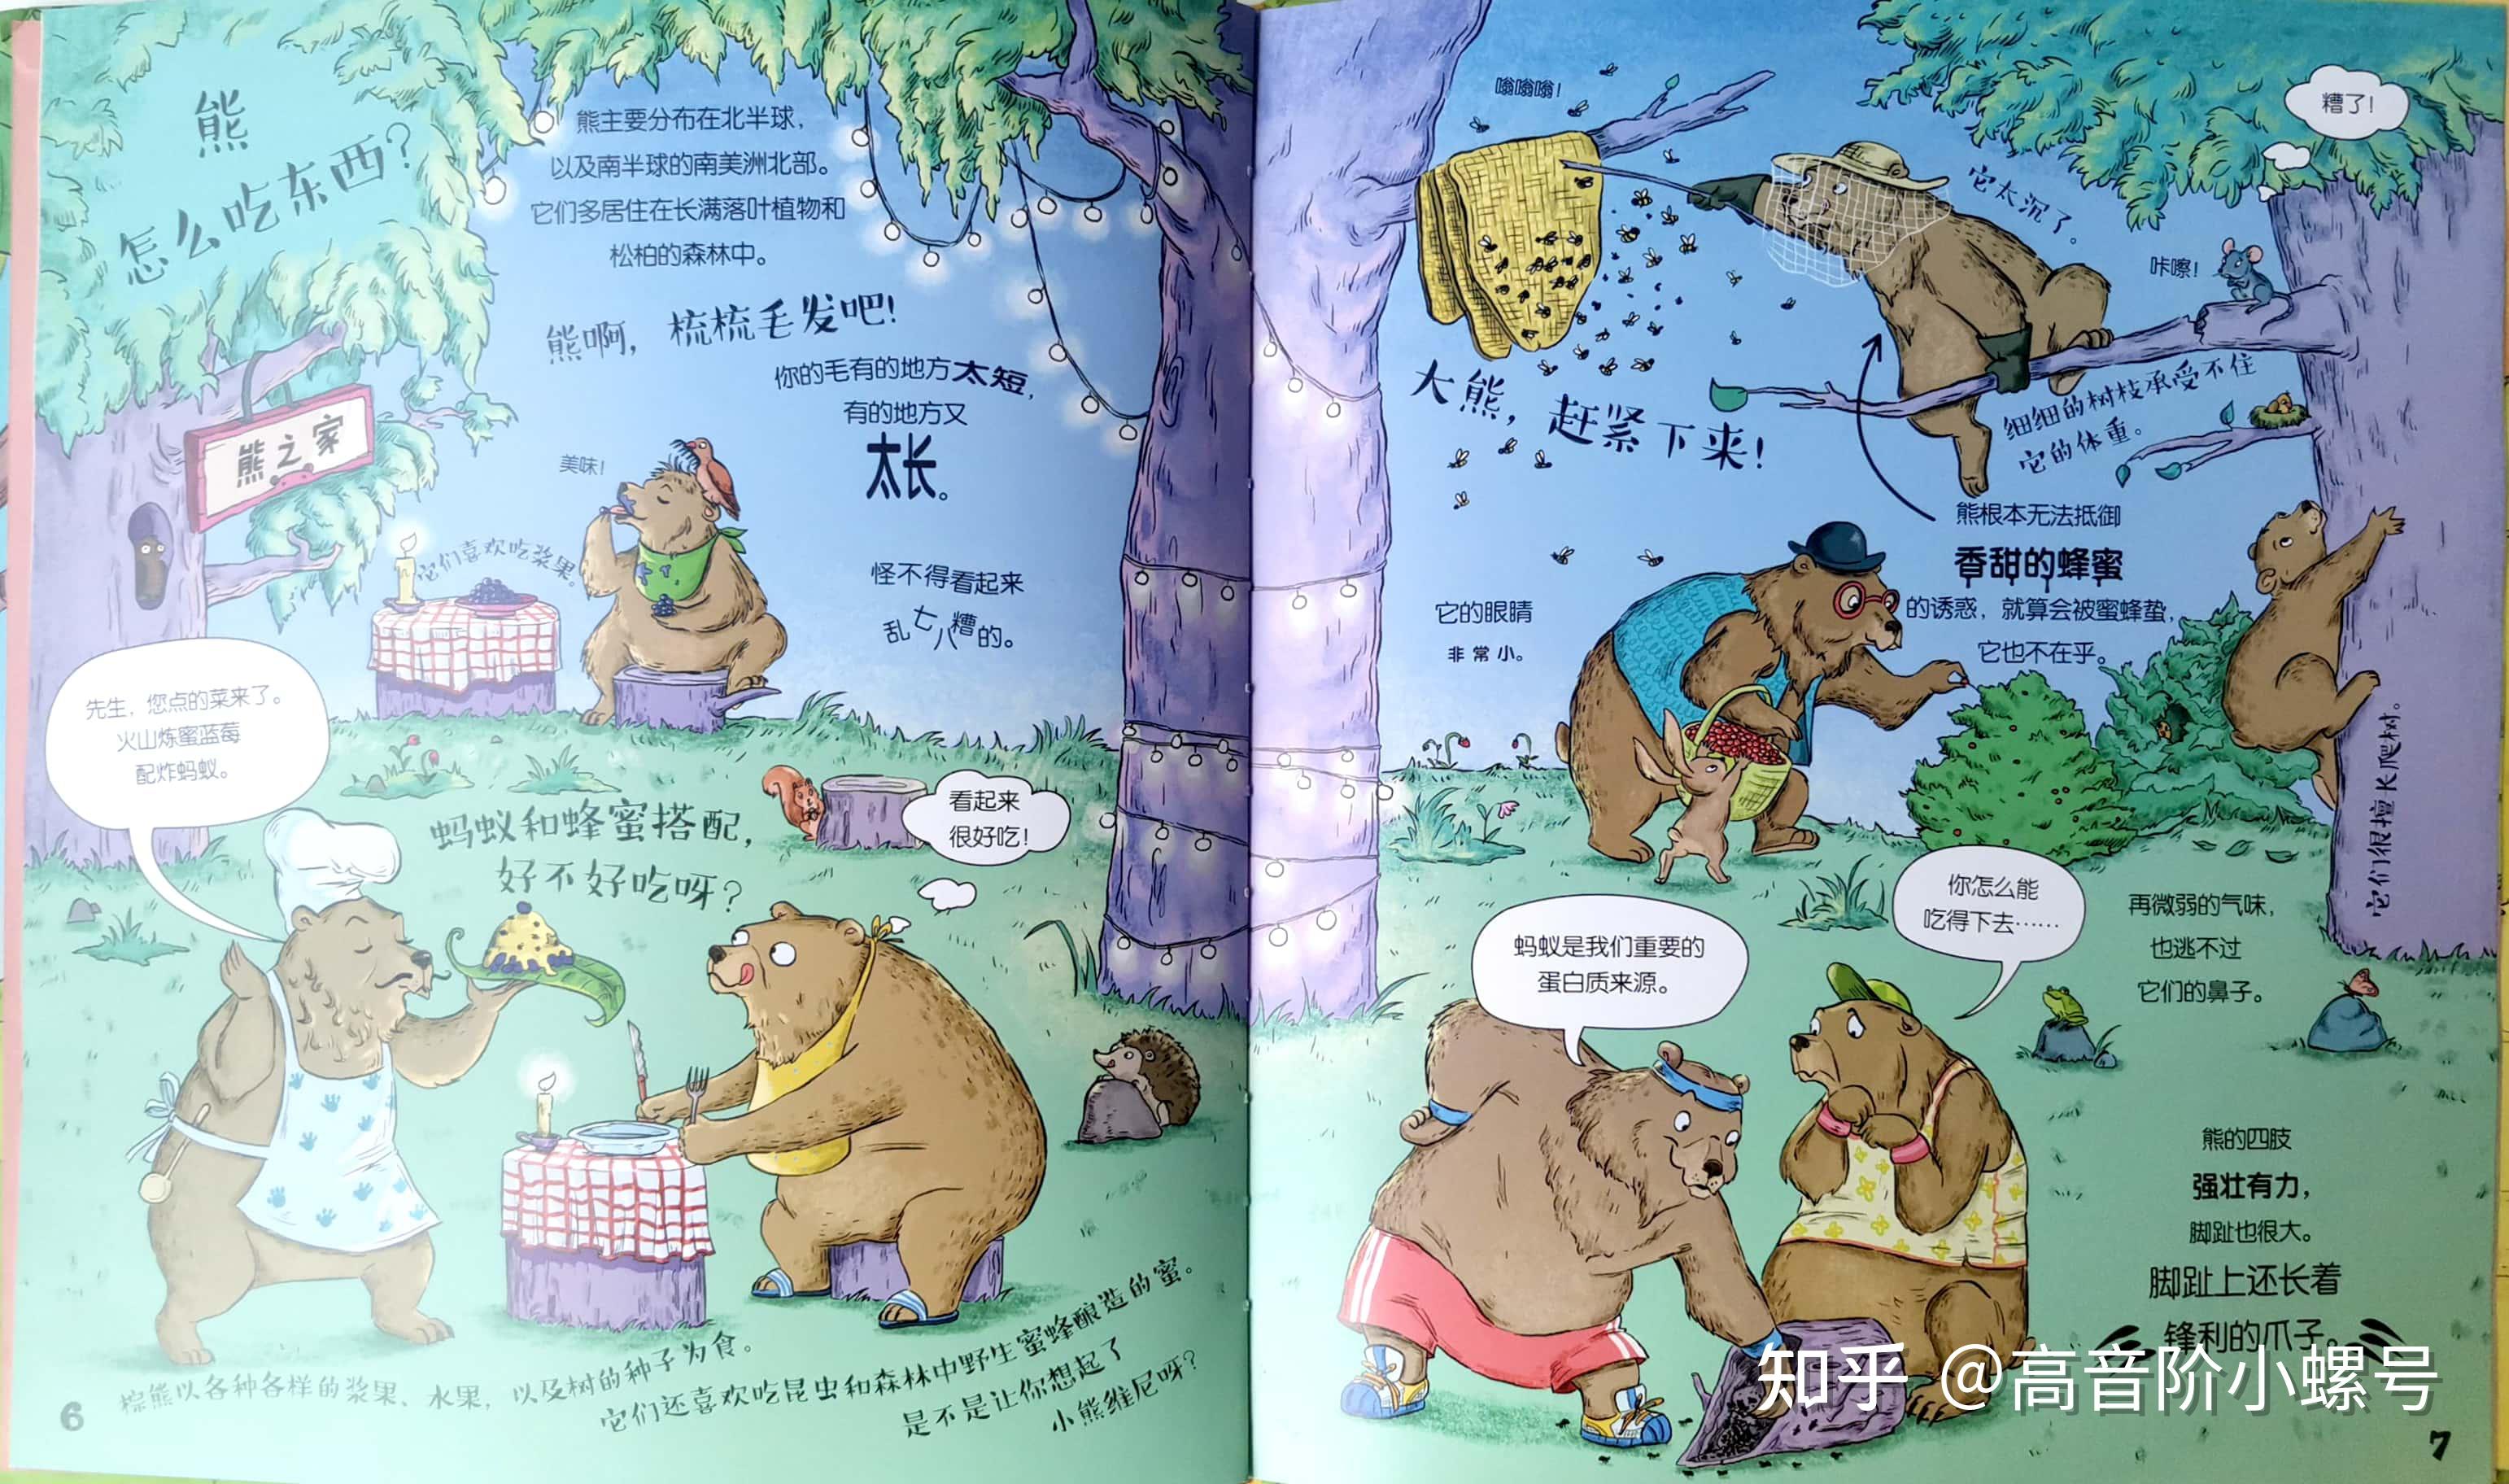 作者就为大熊设计了外出点餐的场景,熊大厨为熊客人端出了火山炼蜜